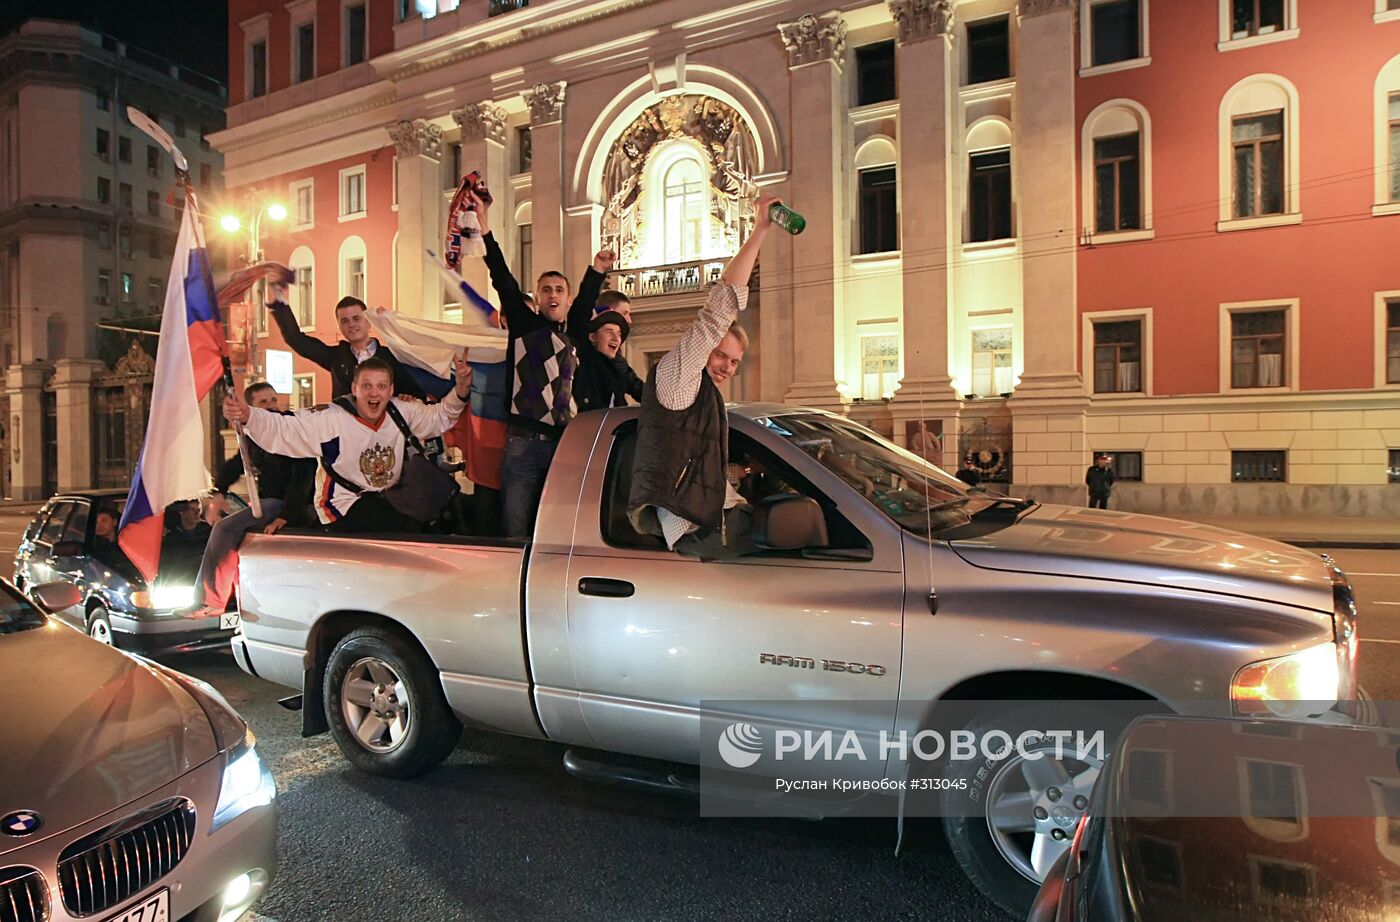 Сборная России выиграла чемпионат мира 2008 по хоккею с шайбой